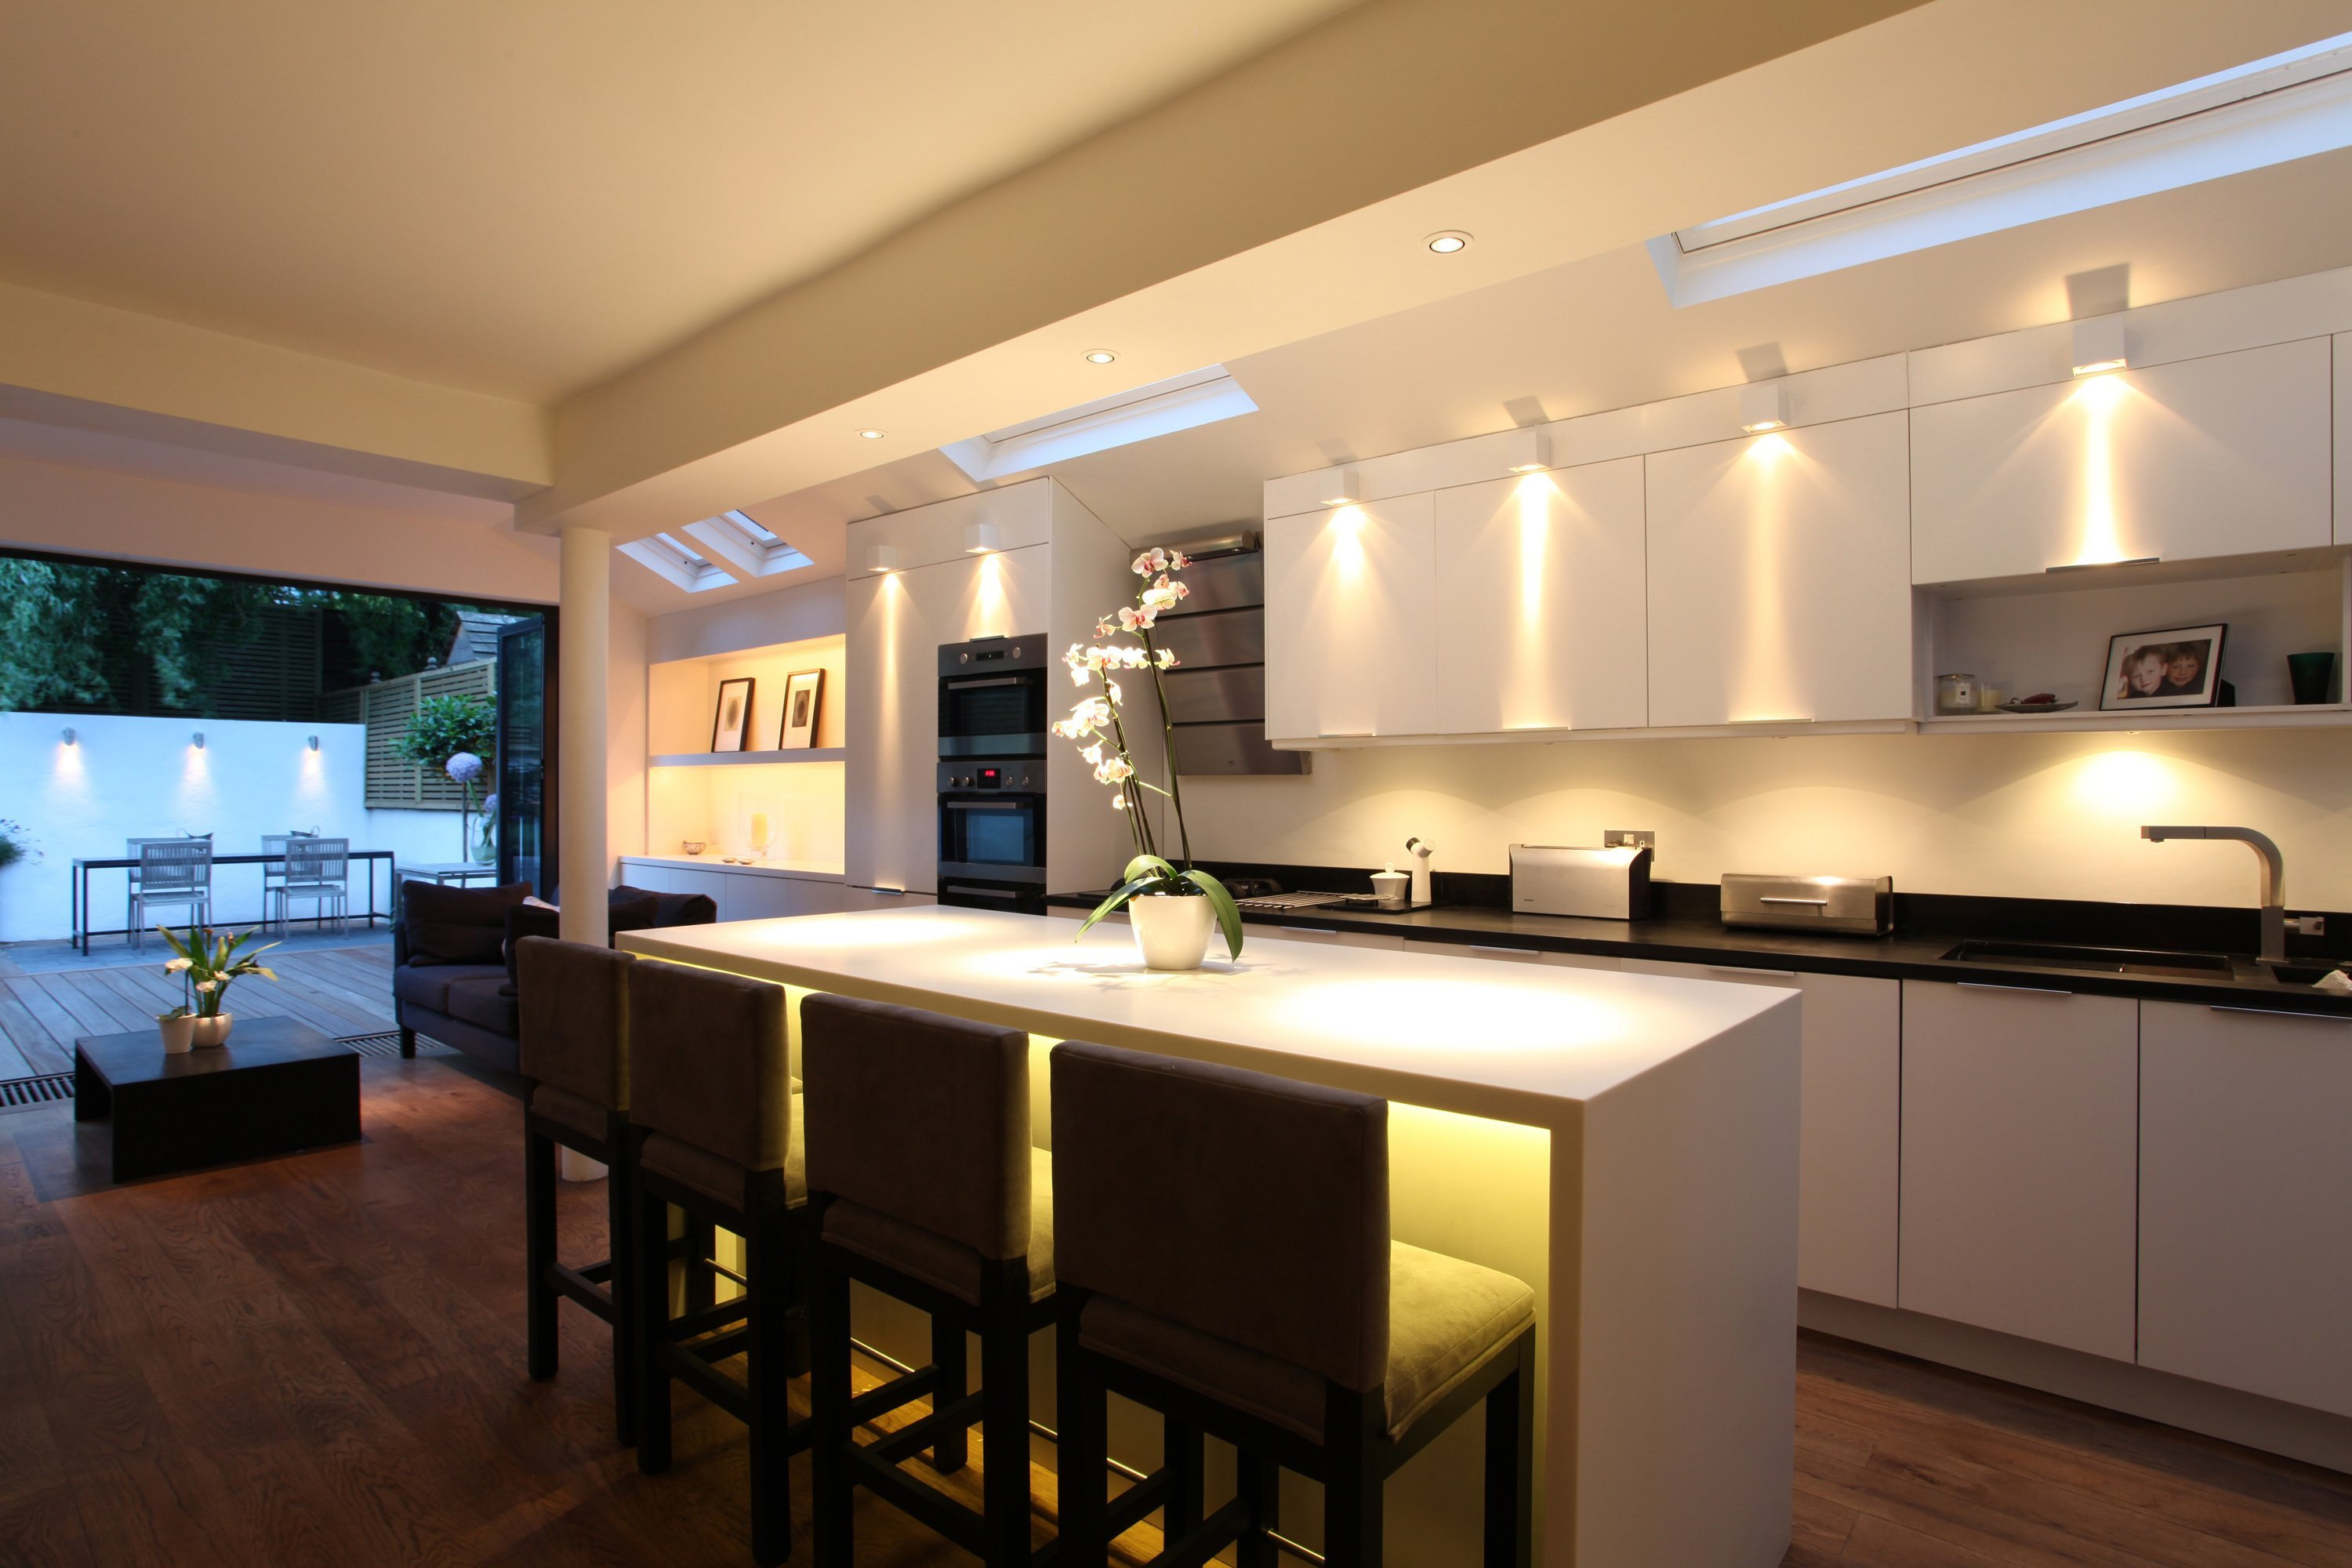 Проектирование освещения теплый свет. Освещение на кухне. Дизайнерское освещение кухни. Современная кухня с подсветкой. Освещение кухонной зоны.